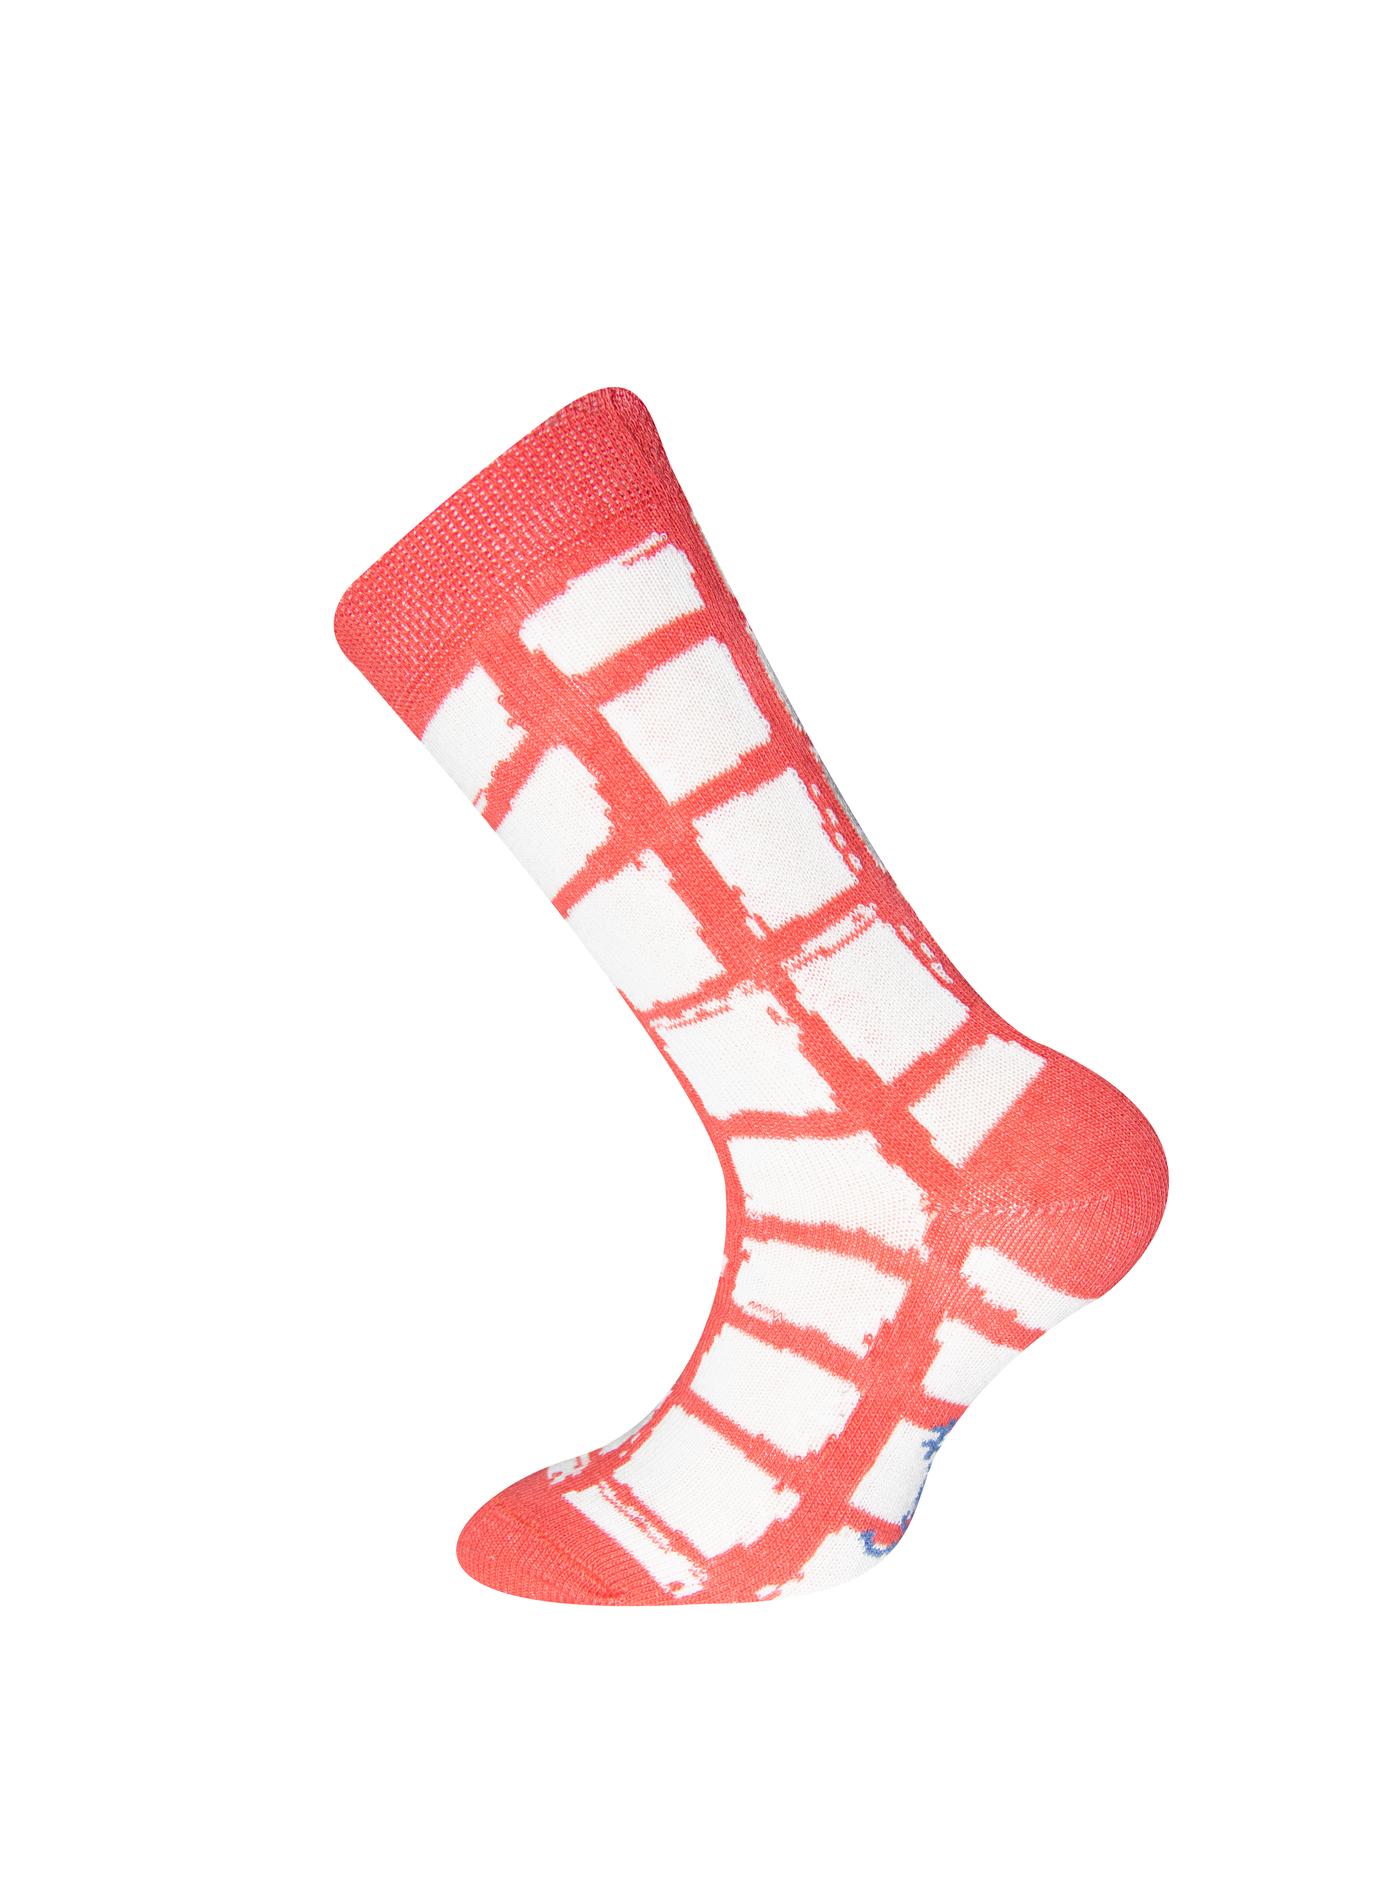 Mädchen-Socken (Doppelpack) Blau und Rot-kariert